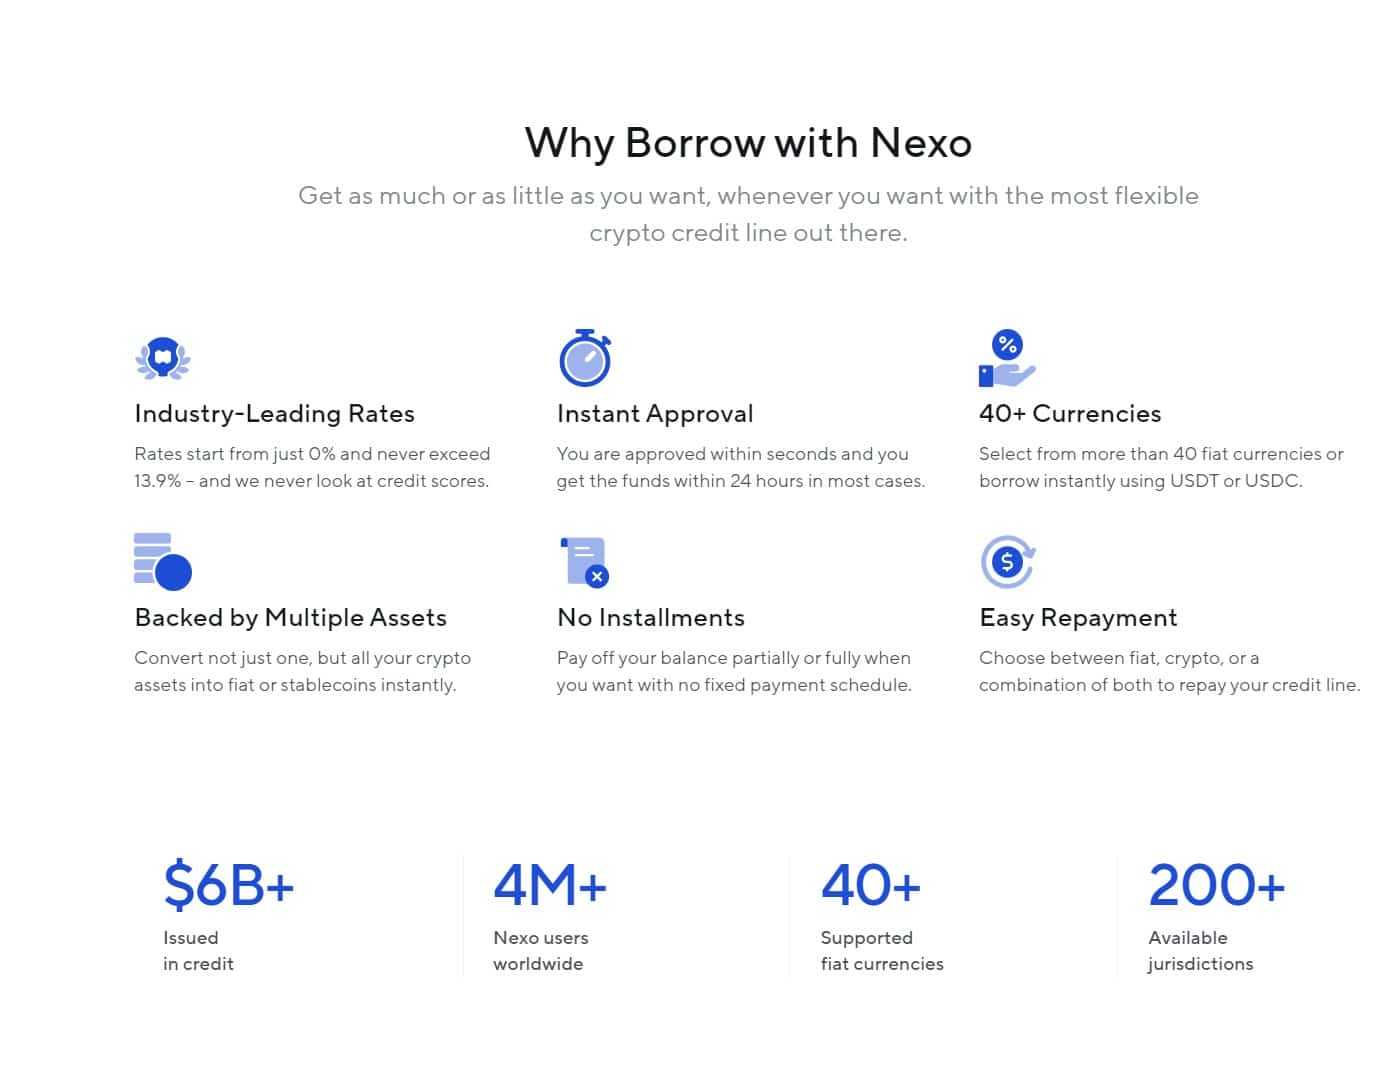 Nexo benefits